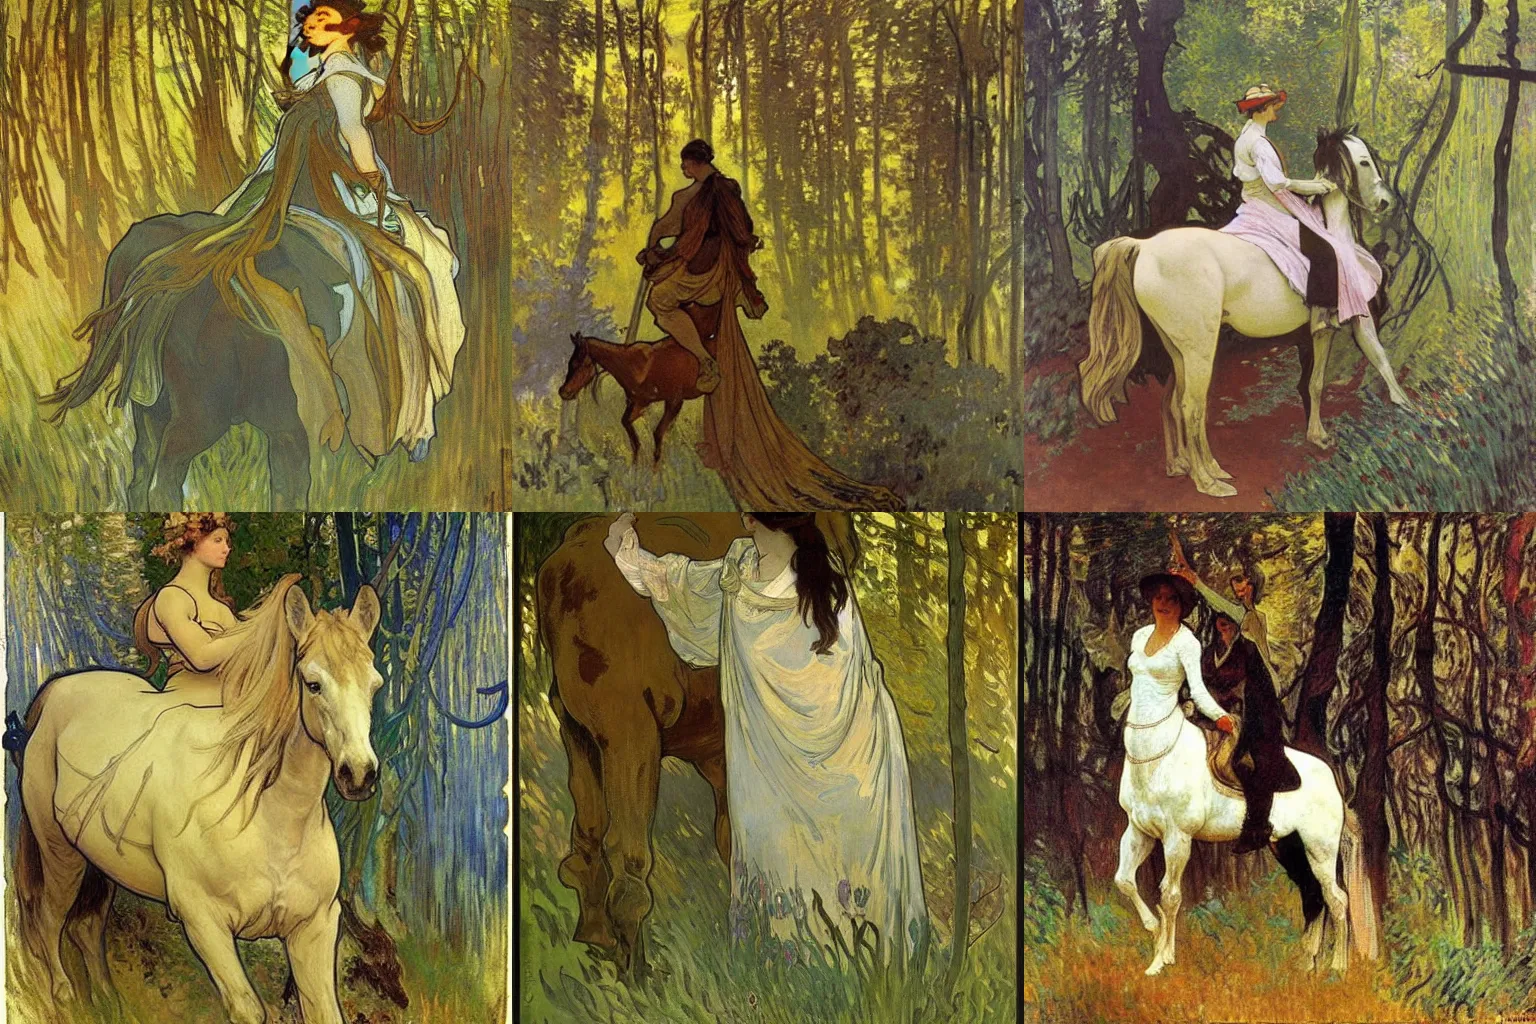 Prompt: Peinture à l'huile, d'un cheval mystique dans une forêt verdoyante, par Monet et Alphonse Mucha.